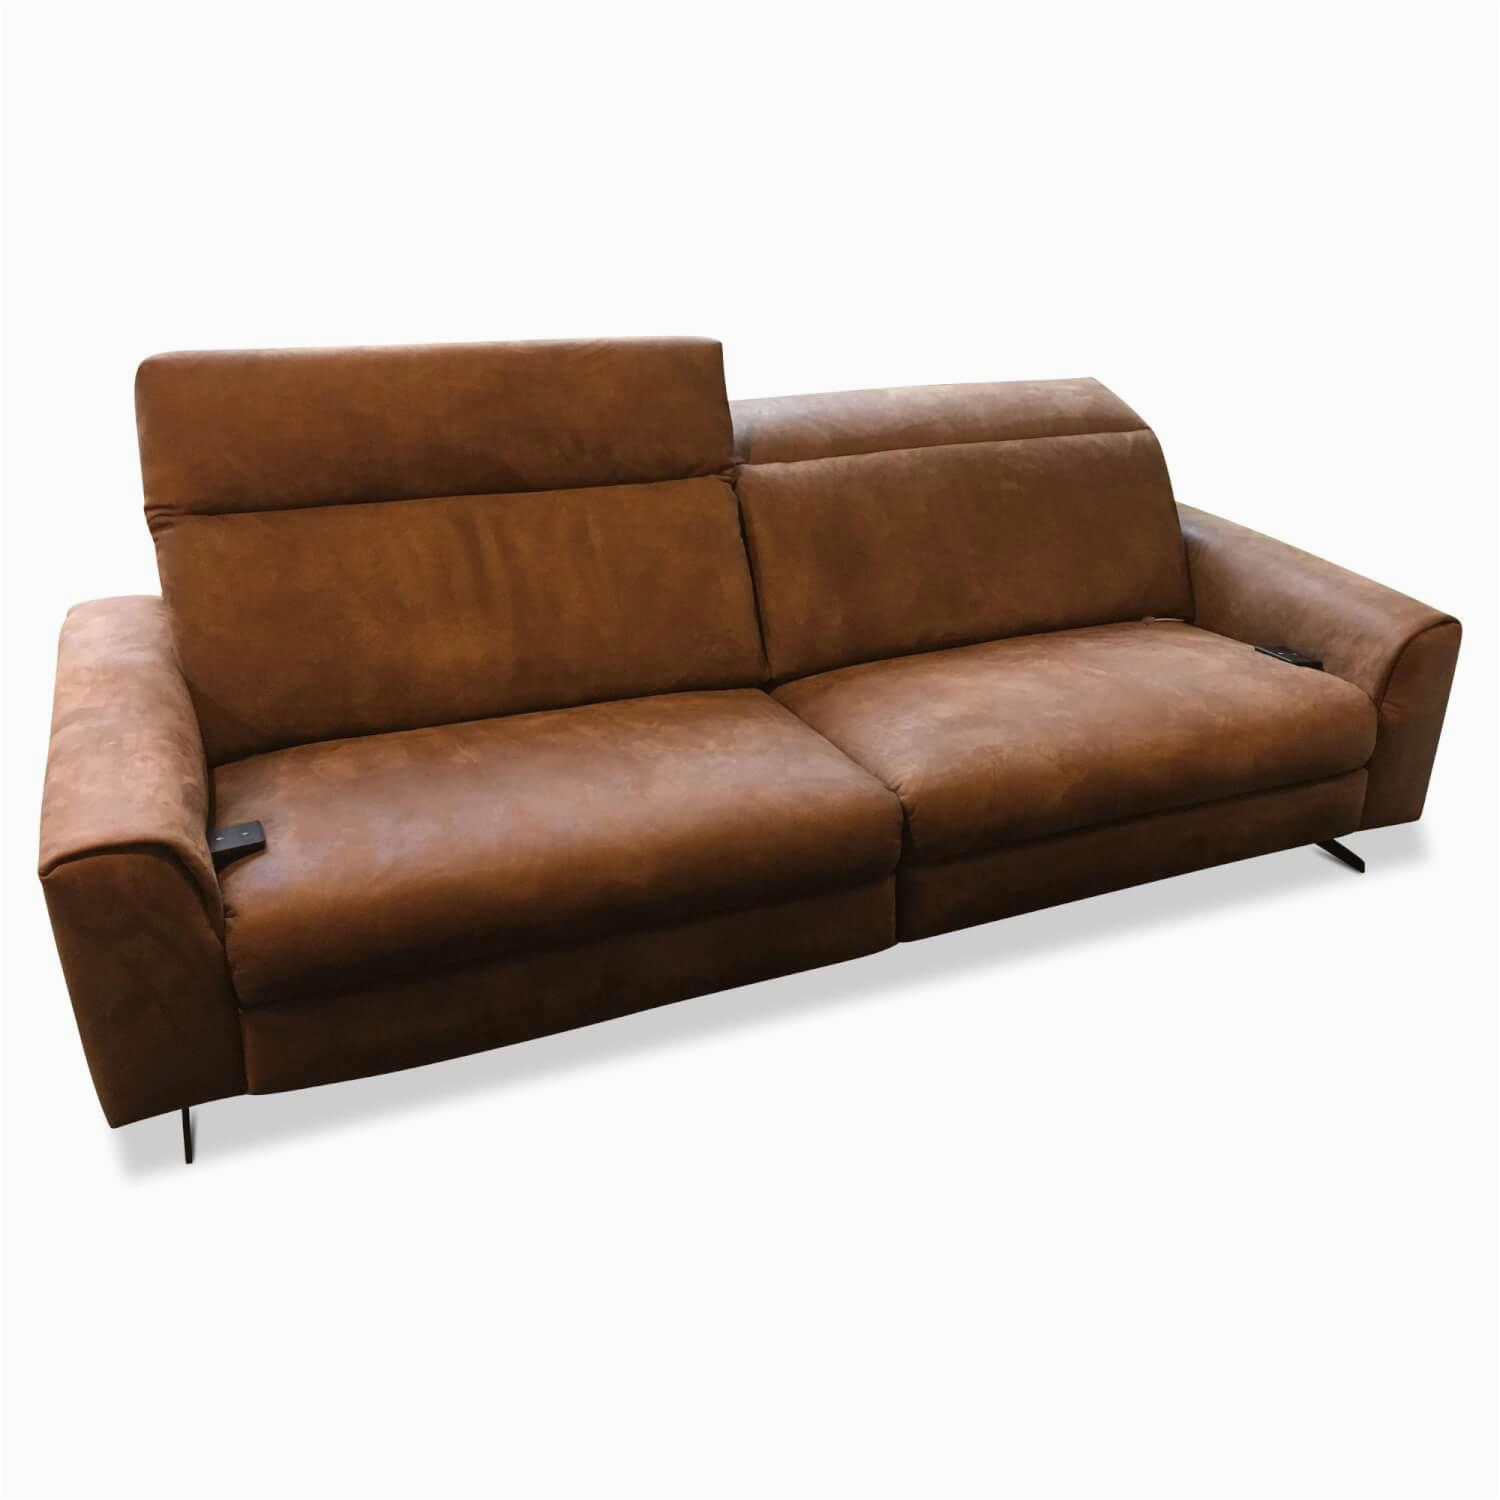 wk wohnen mehr sofas sofa wk660 venosa leder togo braun mit elektrischer relaxfunktion f2758dbae0f3x2qR1AMqnZ4Hh